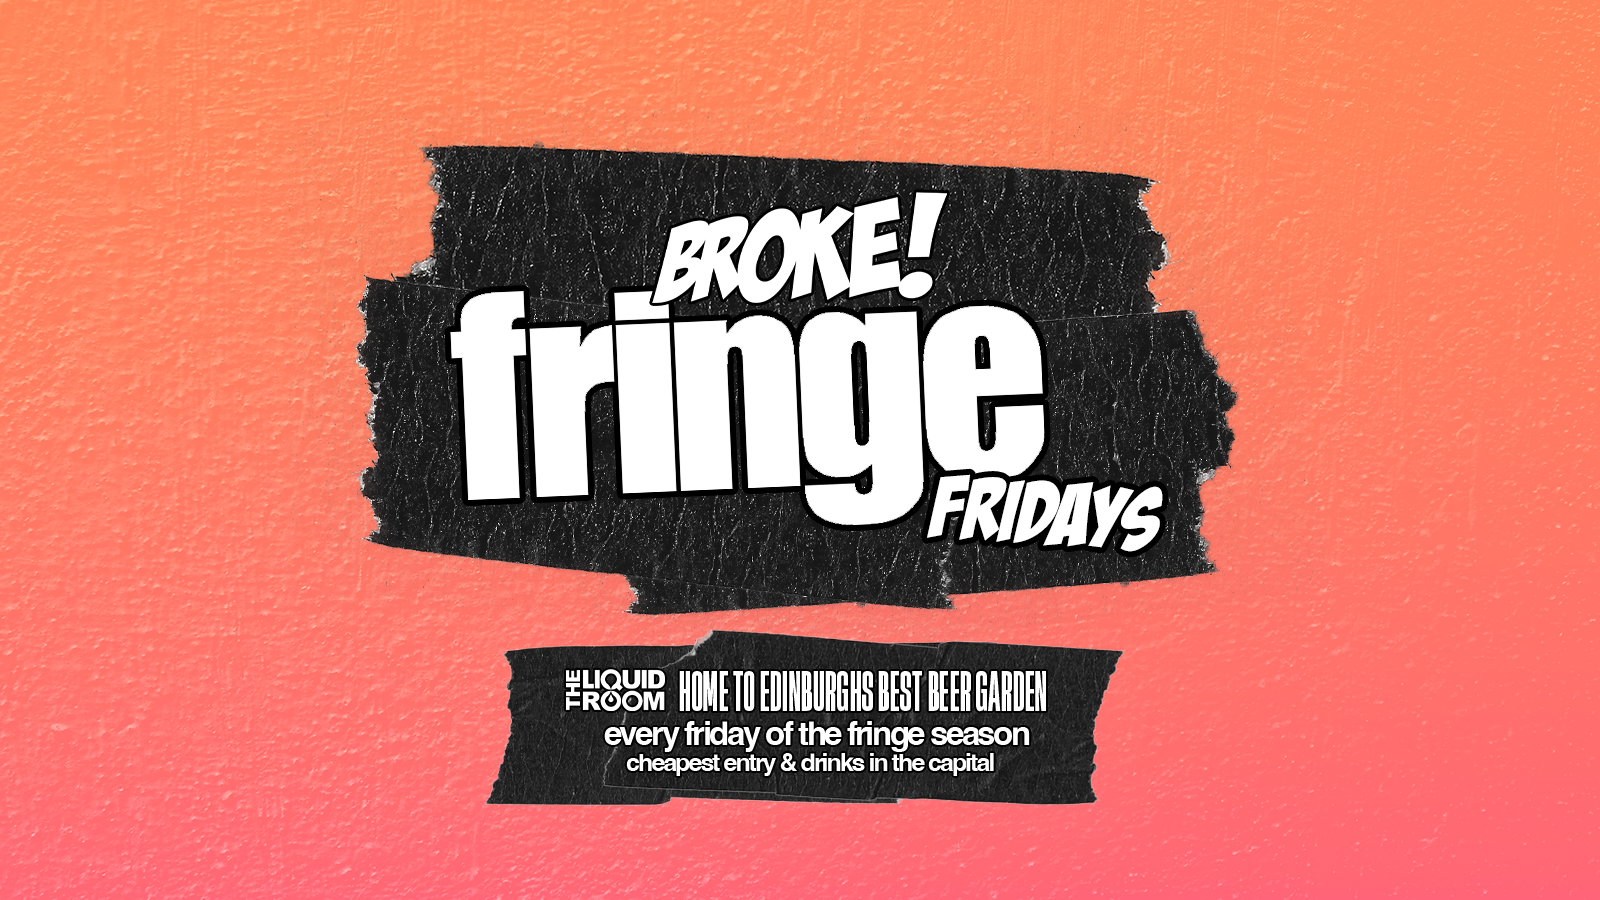 BROKE! FRIDAYS | FRINGE FRIDAYS | 23RD AUG